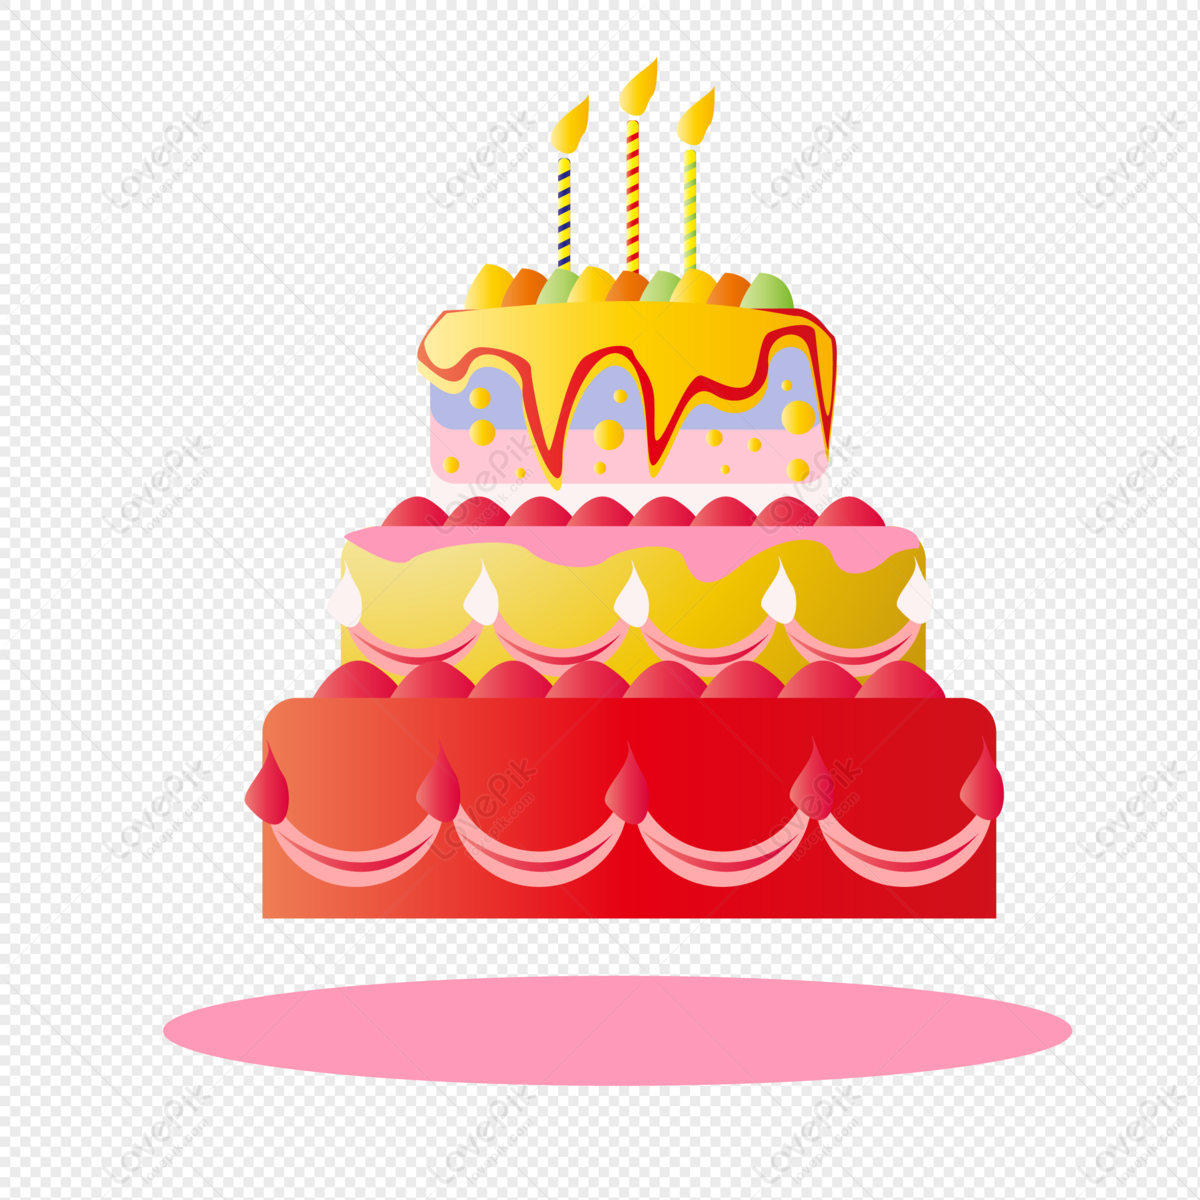 Bánh sinh nhật: Bữa tiệc sinh nhật của bạn sẽ không hoàn hảo nếu thiếu một chiếc bánh sinh nhật ngon lành. Với những kiểu bánh độc đáo và sản phẩm chất lượng từ đầu bếp chuyên nghiệp, bạn sẽ tìm thấy chiếc bánh hoàn hảo để kết thúc đêm tiệc. Hãy xem hình ảnh để thấy sự ấn tượng của những chiếc bánh tuyệt đẹp này!